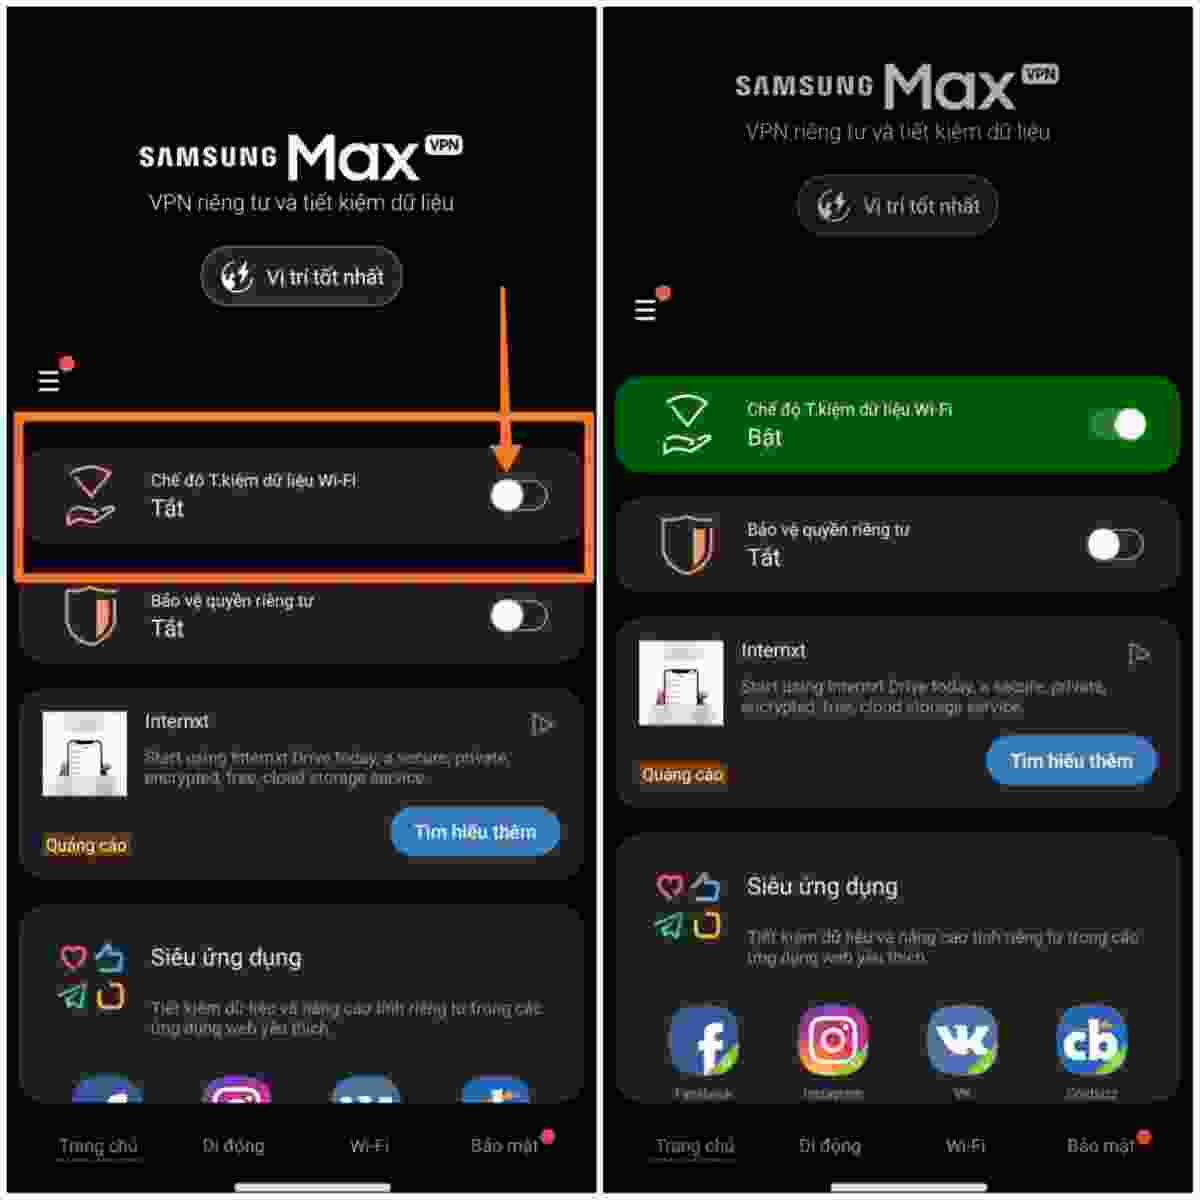 Samsung Max Là Gì? Cách Sử Dụng Samsung Max Hiệu Quả - Fptshop.Com.Vn